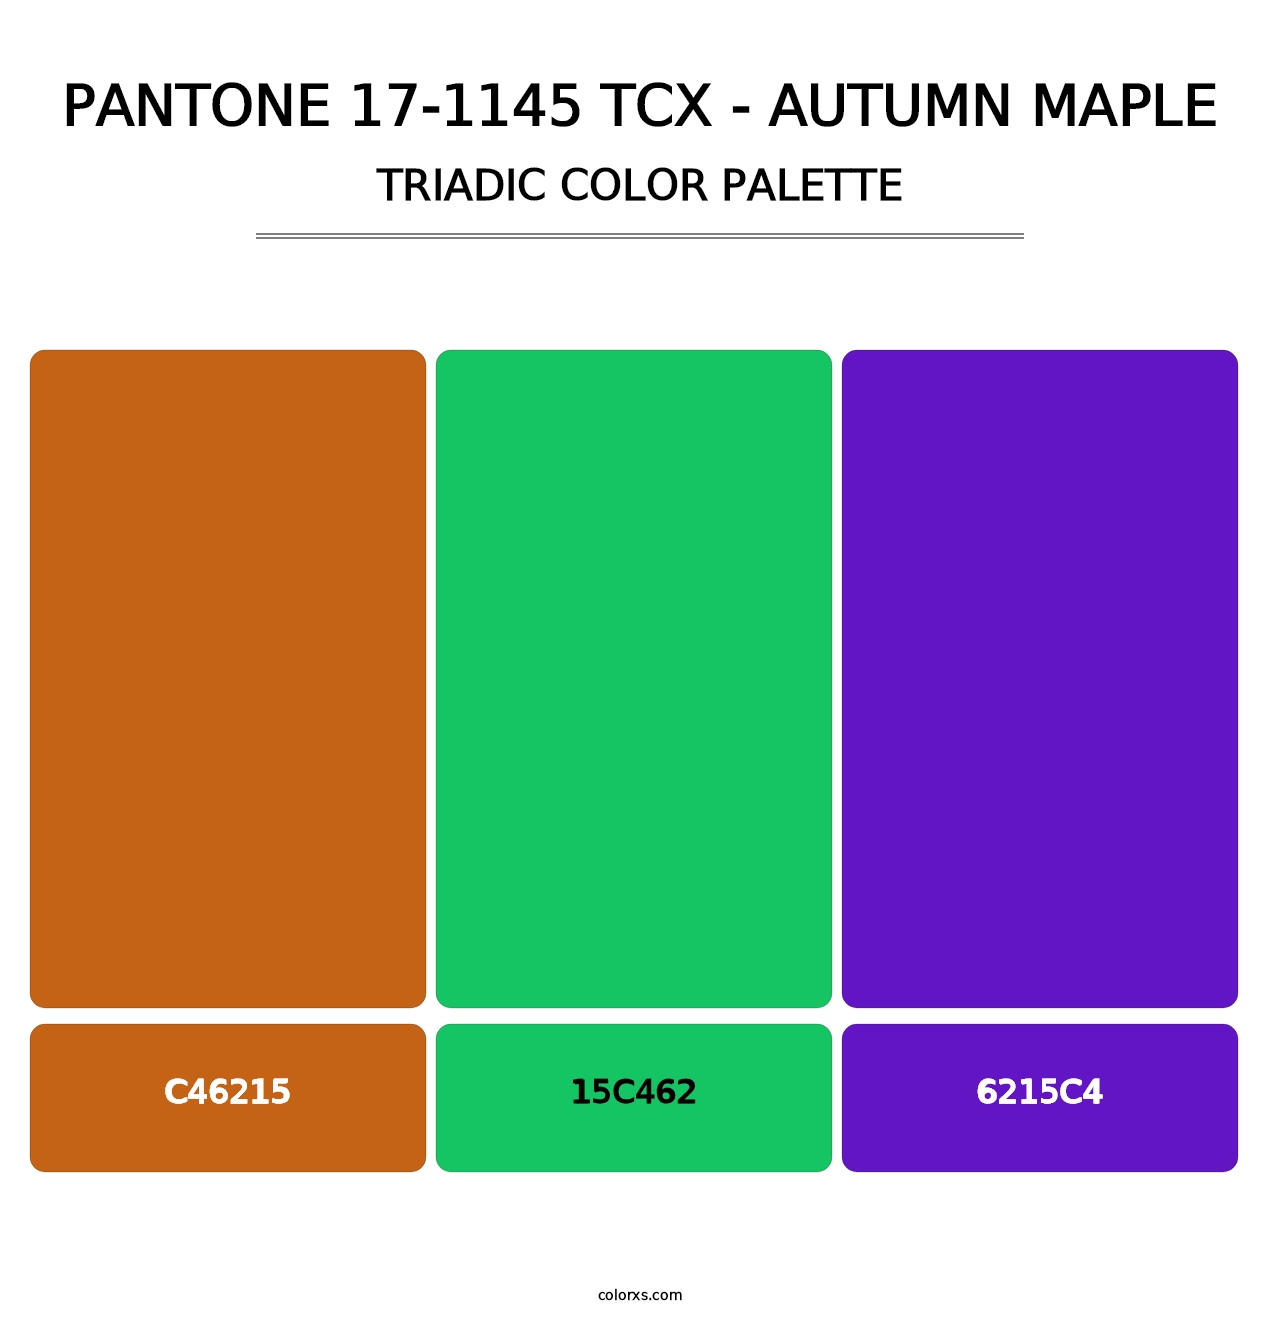 PANTONE 17-1145 TCX - Autumn Maple - Triadic Color Palette